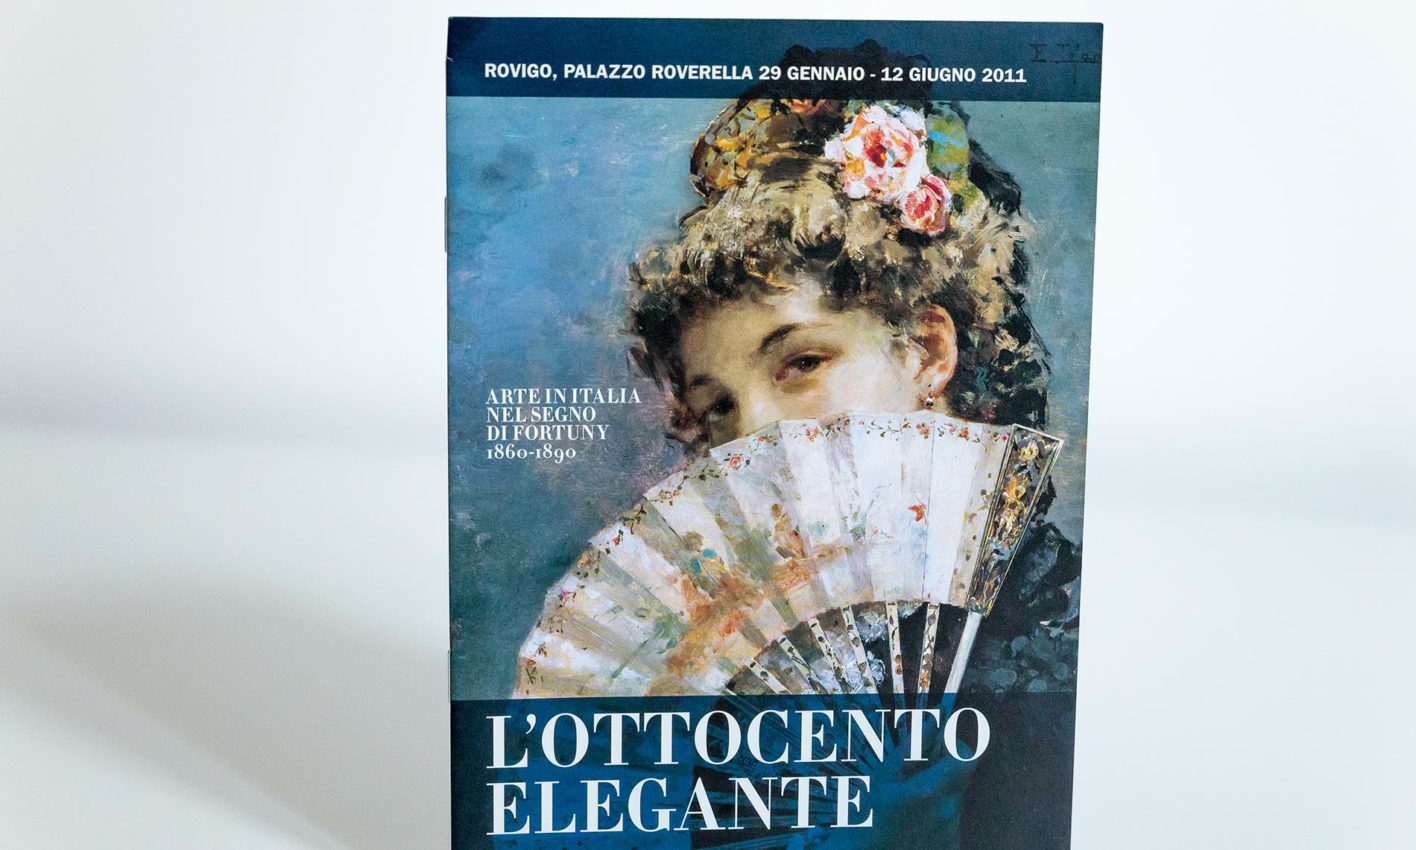 "L'ottocento elegante" a Palazzo Roverella, Rovigo. Committente: Fondazione Cassa di Risparmio di Padova e Rovigo; graphic design: Laura Bortoloni; anno: 2011